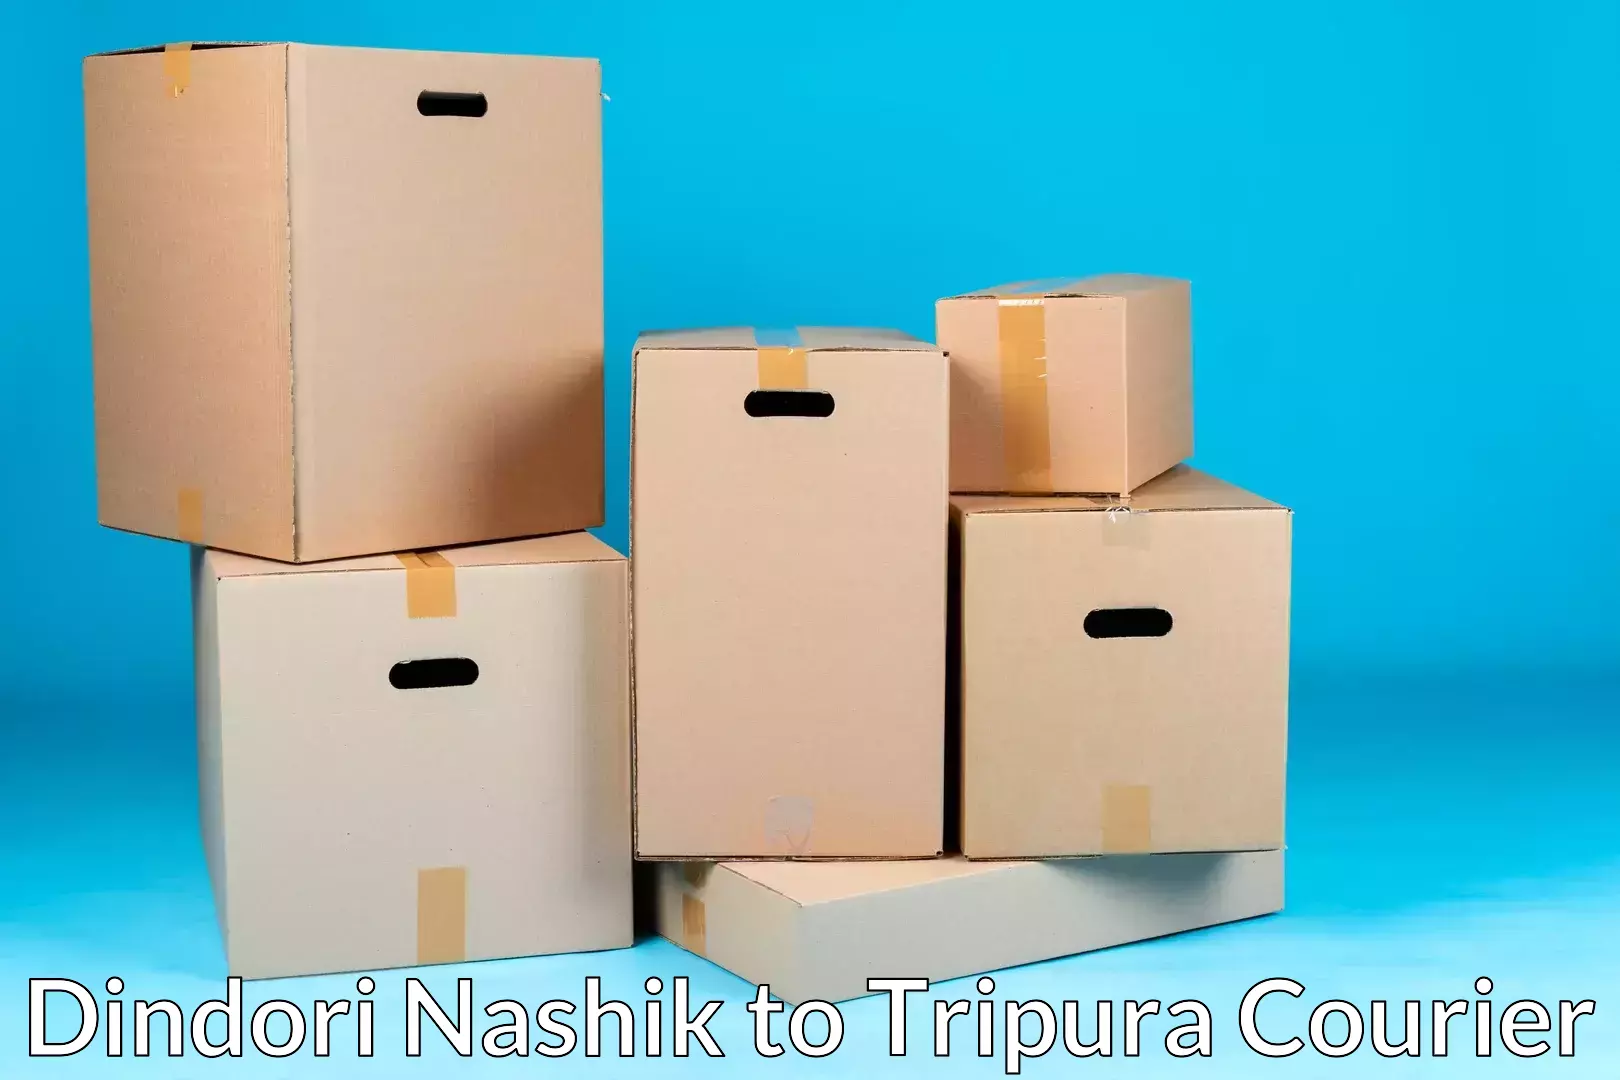 Moving and packing experts Dindori Nashik to Tripura